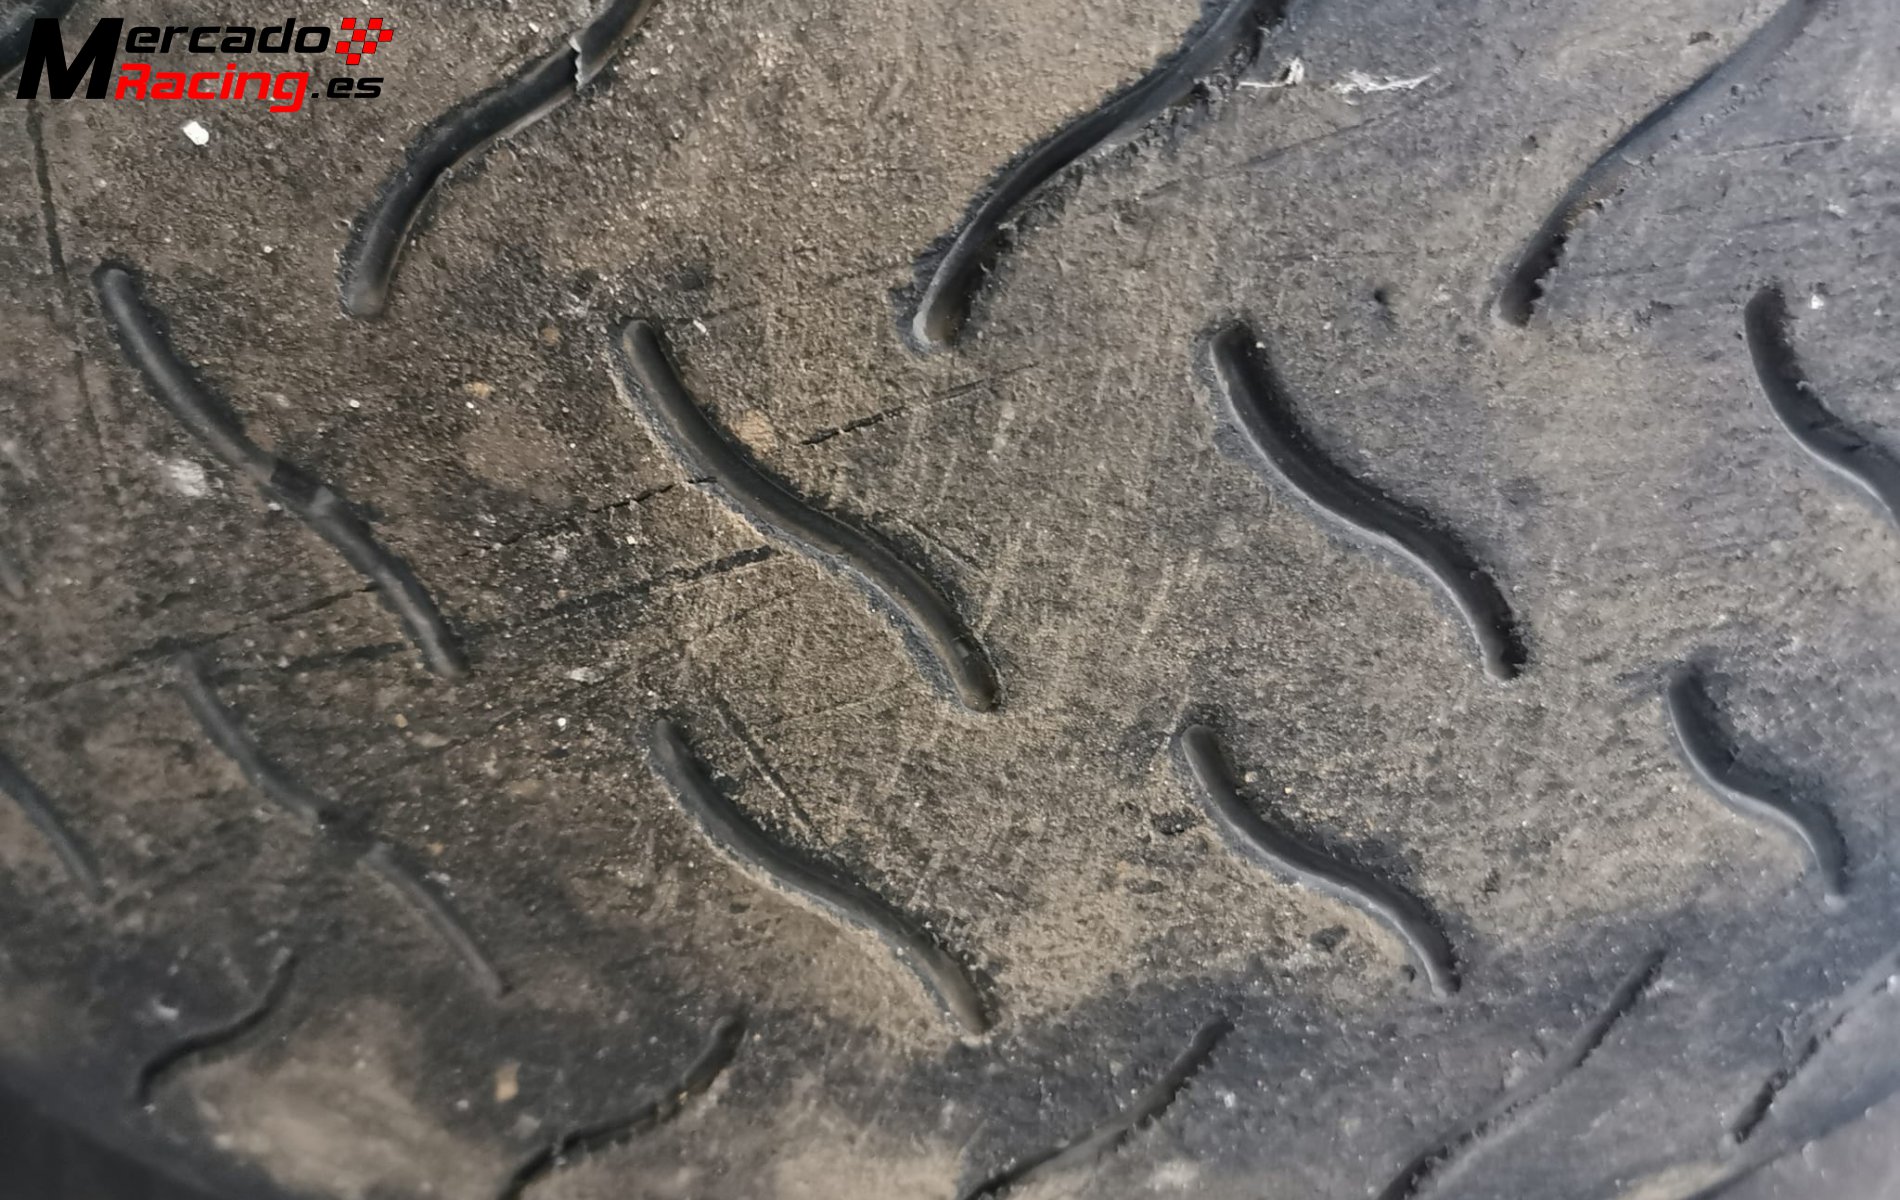 Neumáticos hankook en 13  (seco y mojado)